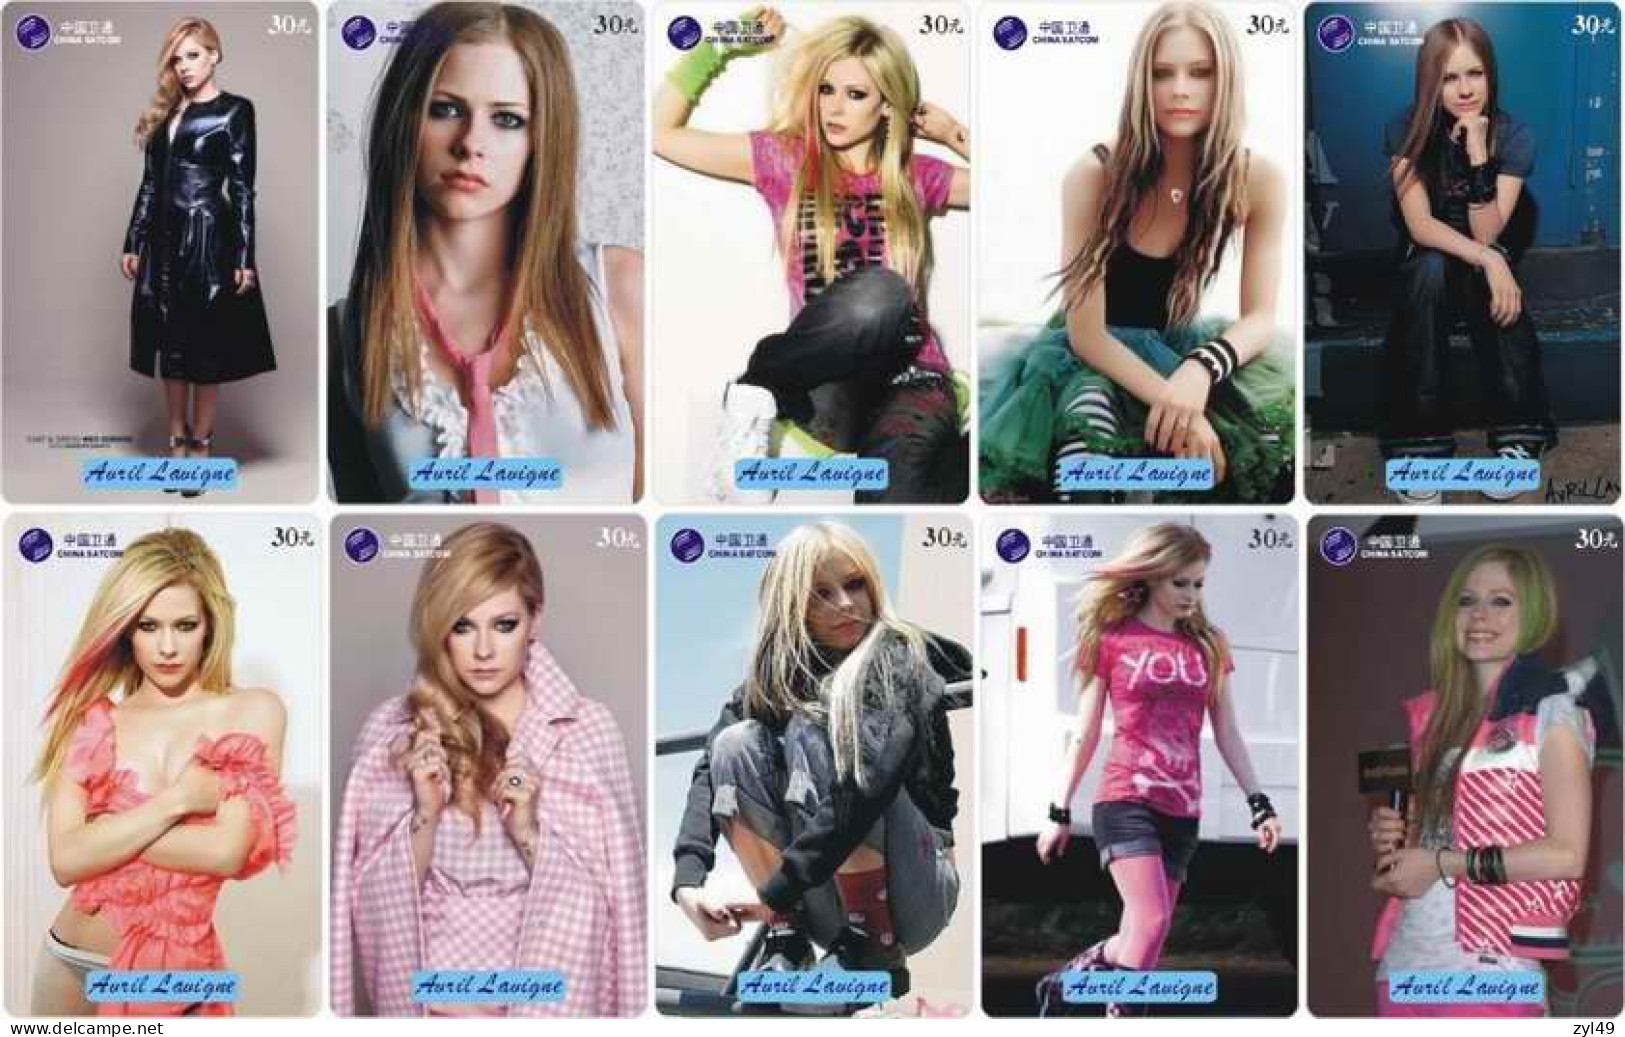 M14028 China phone cards Avril Lavigne 250pcs